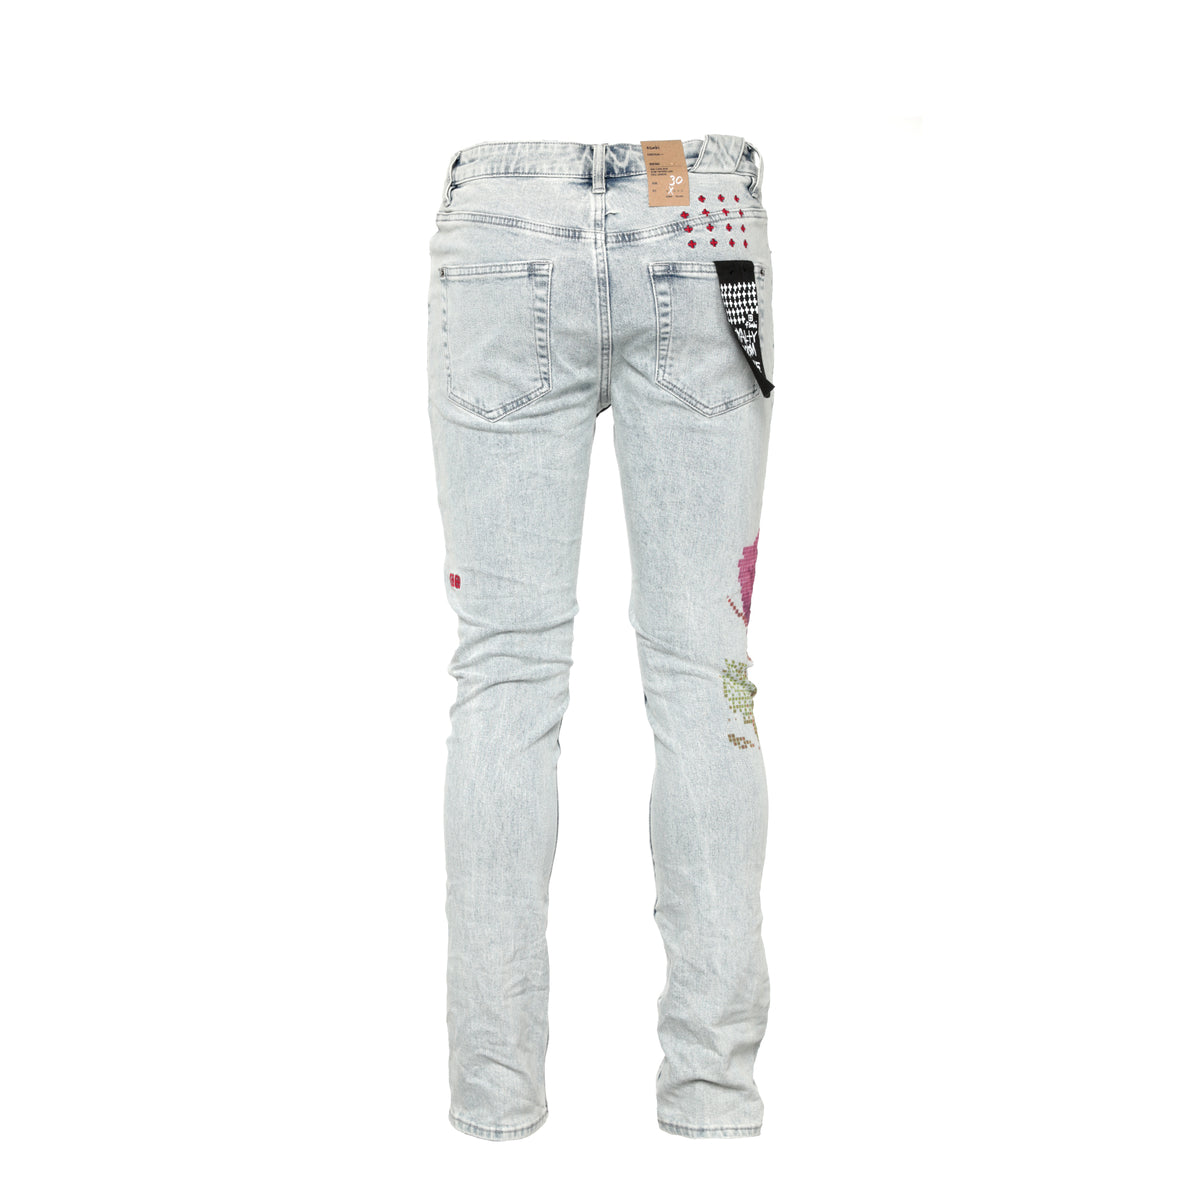 Ksubi Chitch Pixel Refresh Men's Jeans - SIZE Boutique